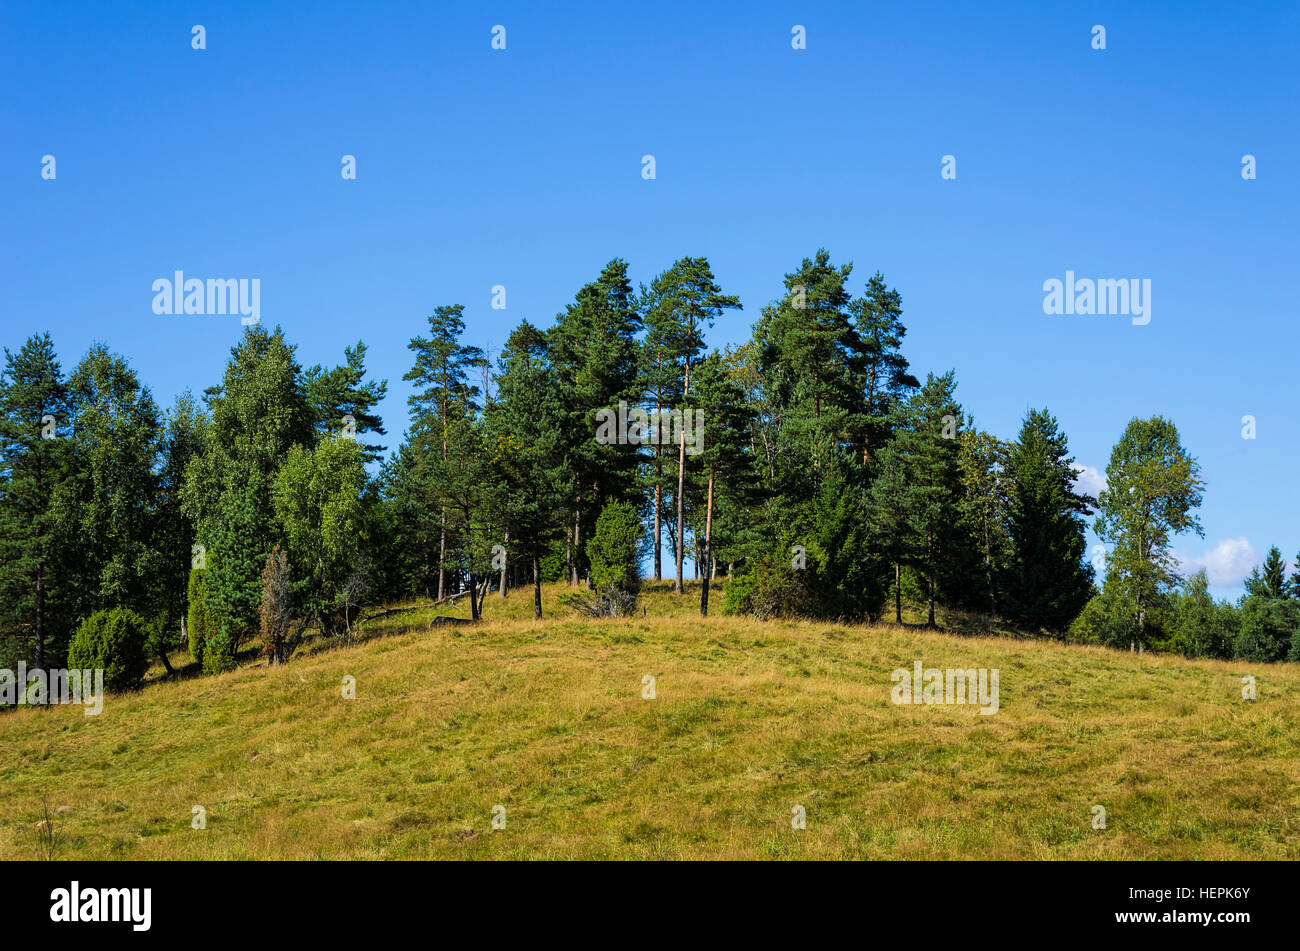 Small forest of trees, Halland County, Sweden. Gruppe von Bäumen, kleiner Wald, in Hallands län, Schweden. Stock Photo